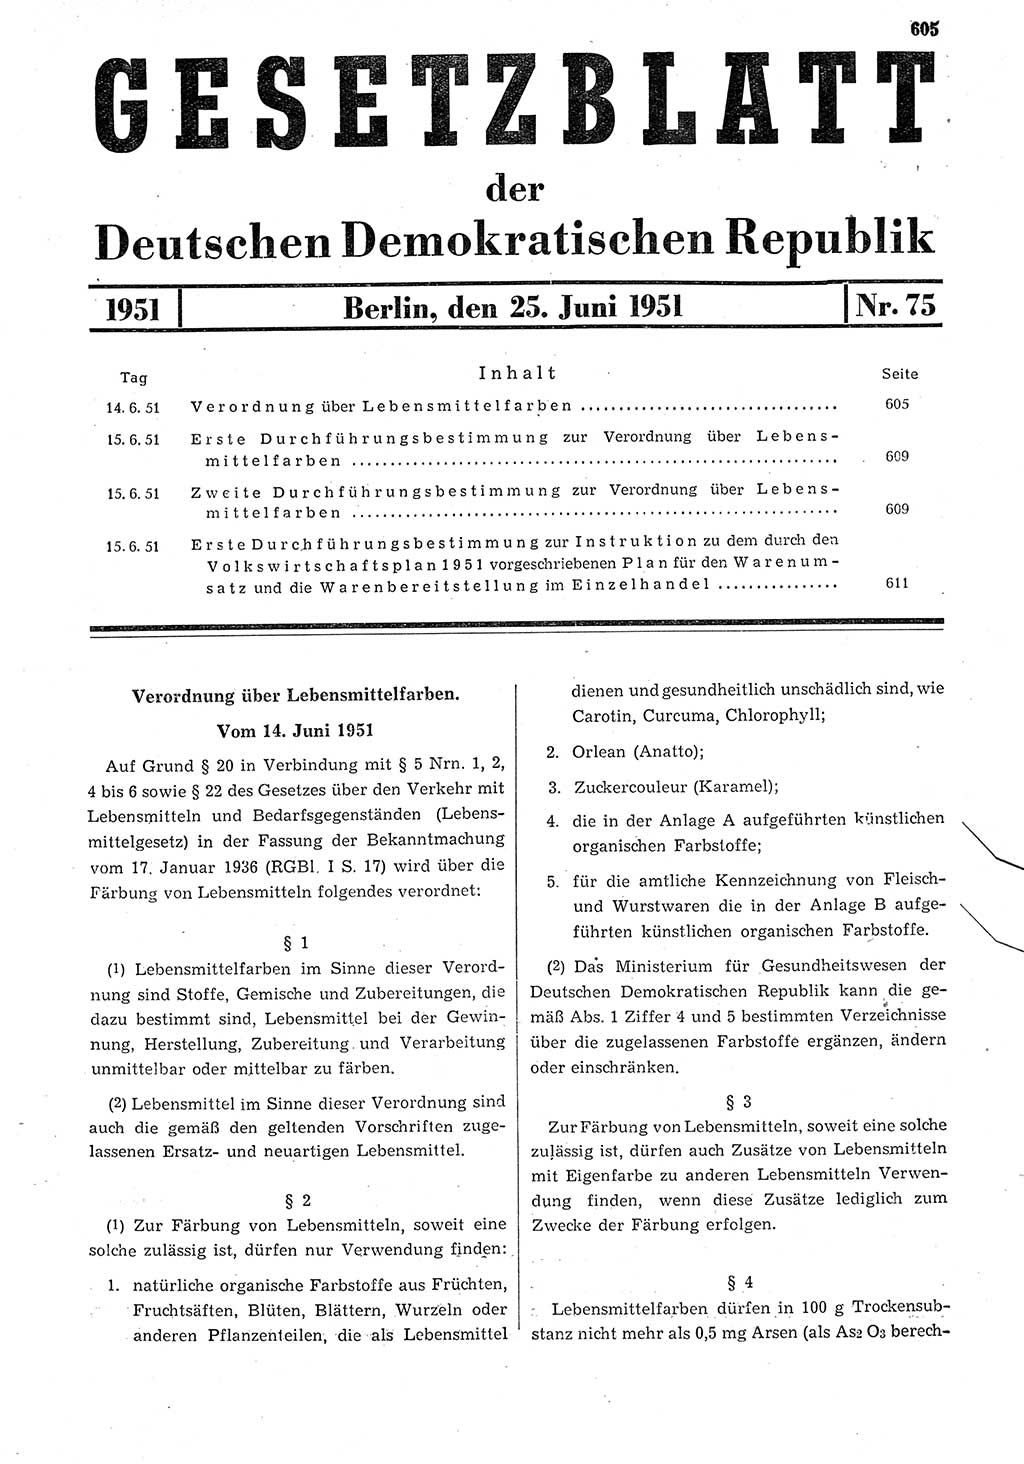 Gesetzblatt (GBl.) der Deutschen Demokratischen Republik (DDR) 1951, Seite 605 (GBl. DDR 1951, S. 605)